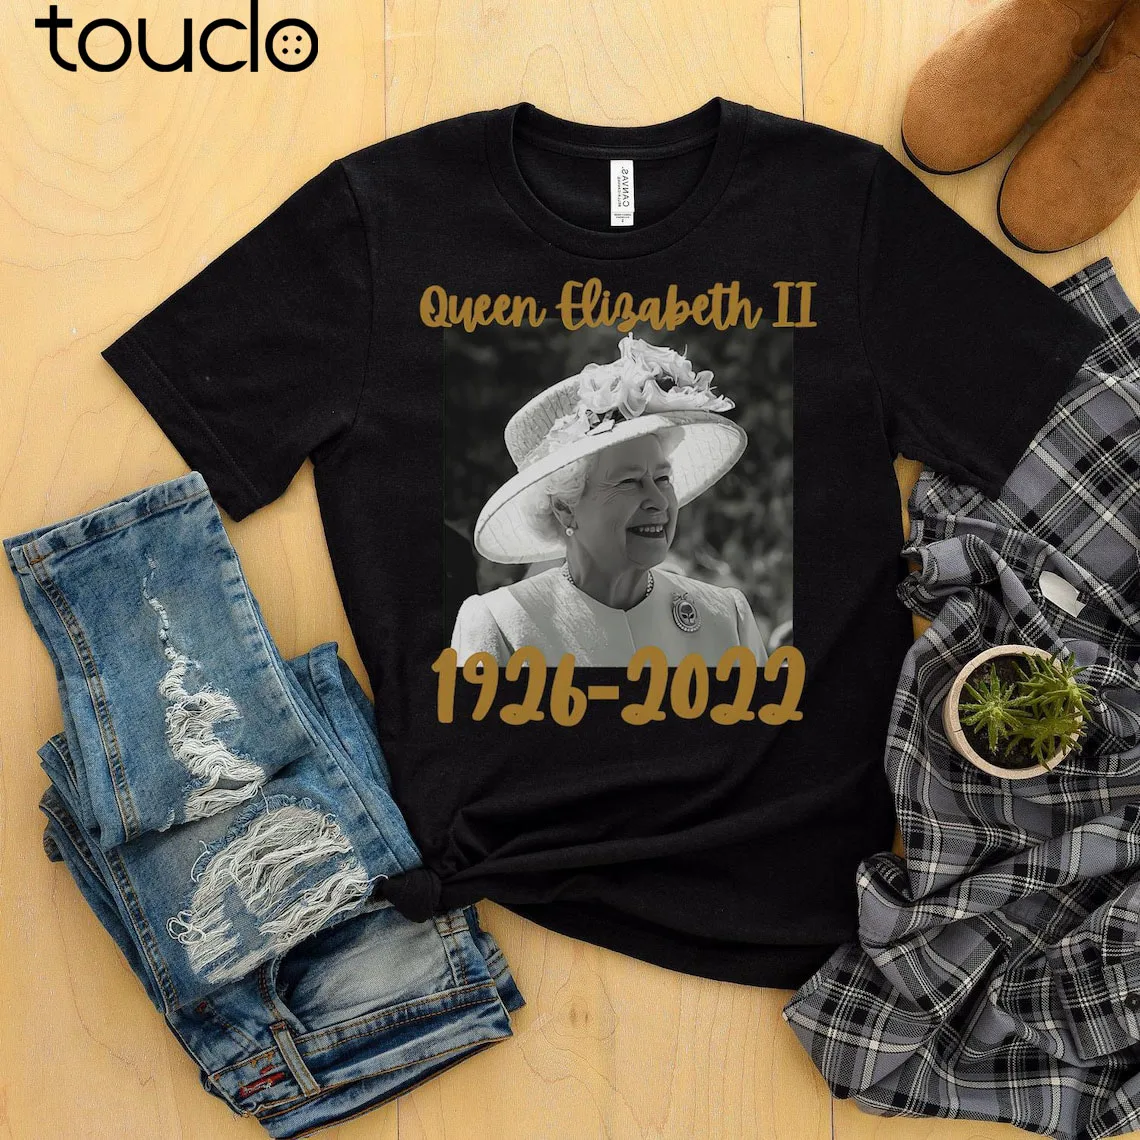 

Рубашка Rip Queen abeths II, Классическая рубашка унисекс 2022, рубашка Рип Квин Элизабет, рубашка Рип Элизабет